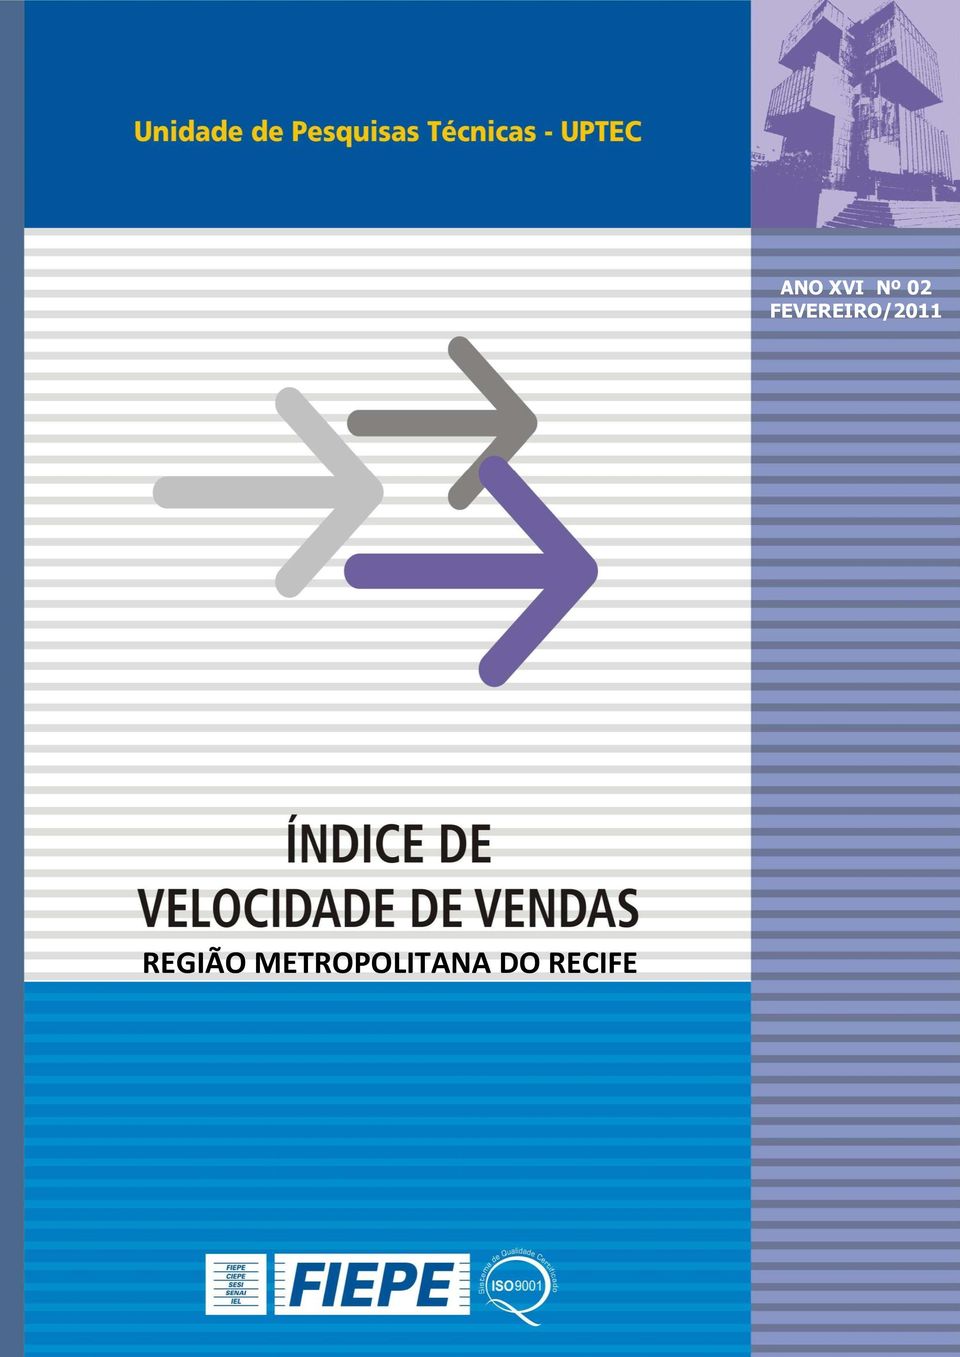 Os índices produzidos são instrumentos para análises conjunturais, ao identificar as variações nas ofertas e nas vendas dos imóveis na Região Metropolitana do Recife.